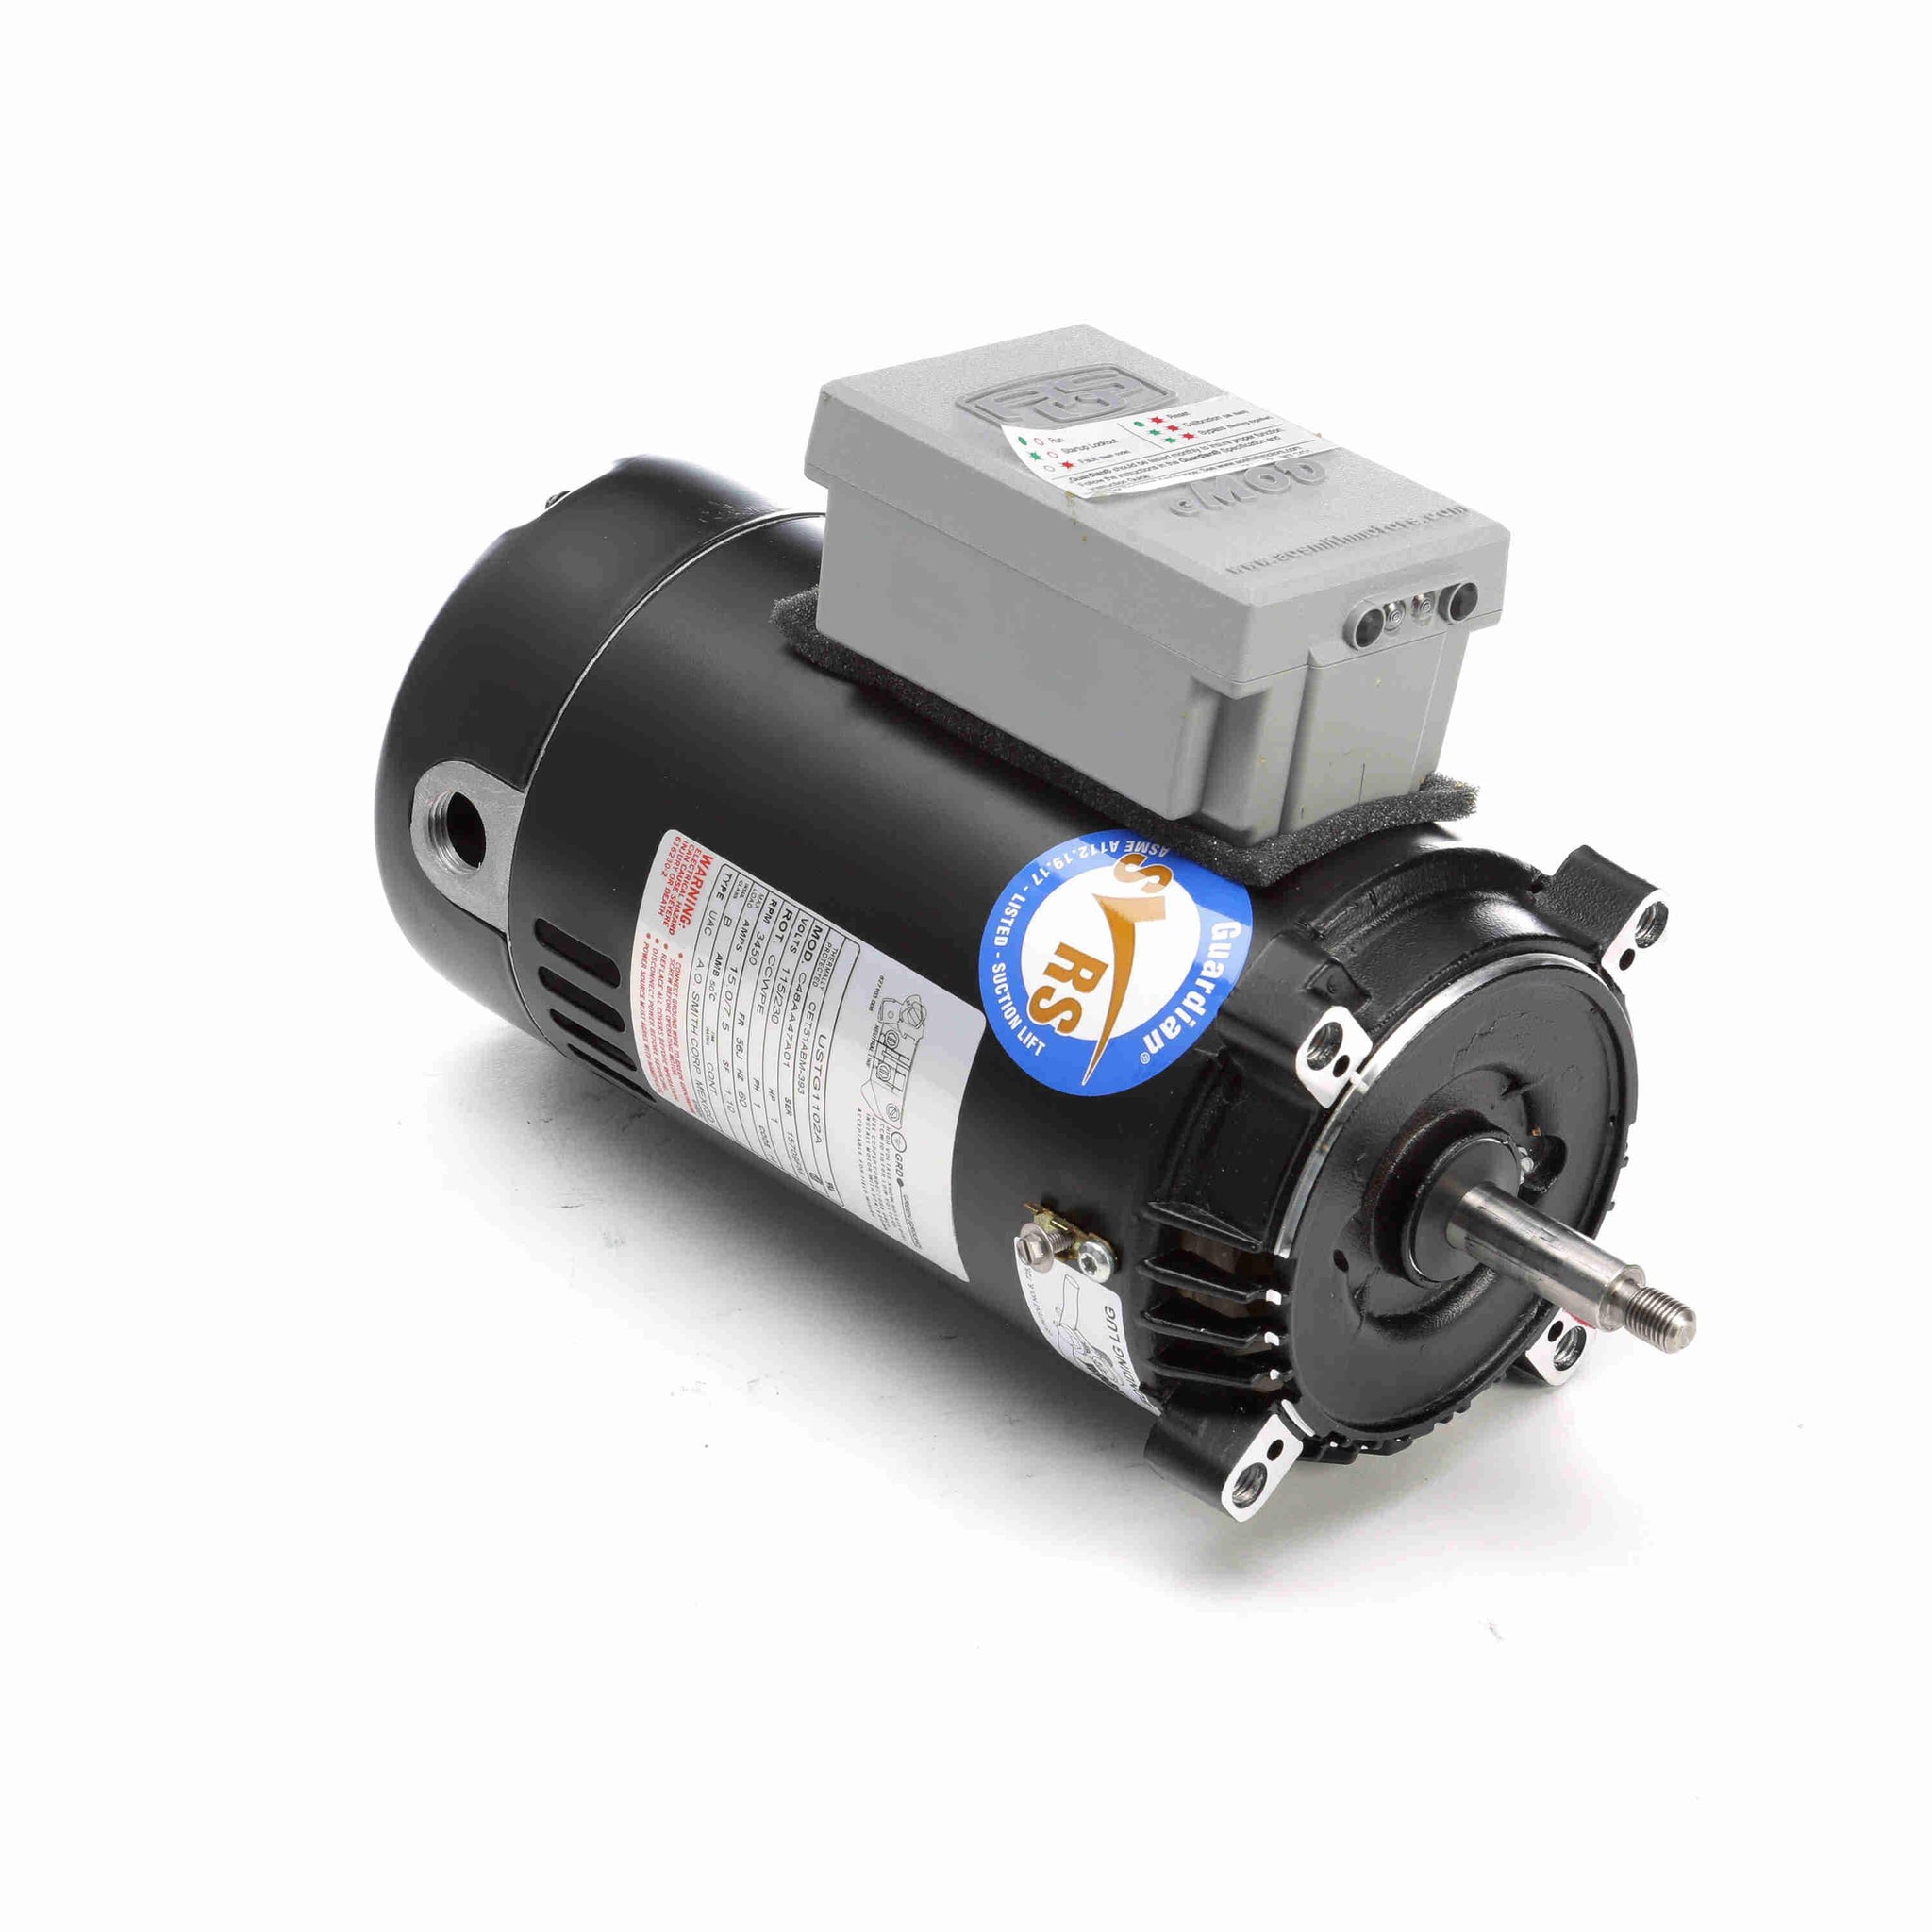 STG1102A - 1 HP Pool Pump Motor, 1 phase, 3600 RPM, 230/115 V, 56J Frame, ODP - Hardware & Moreee